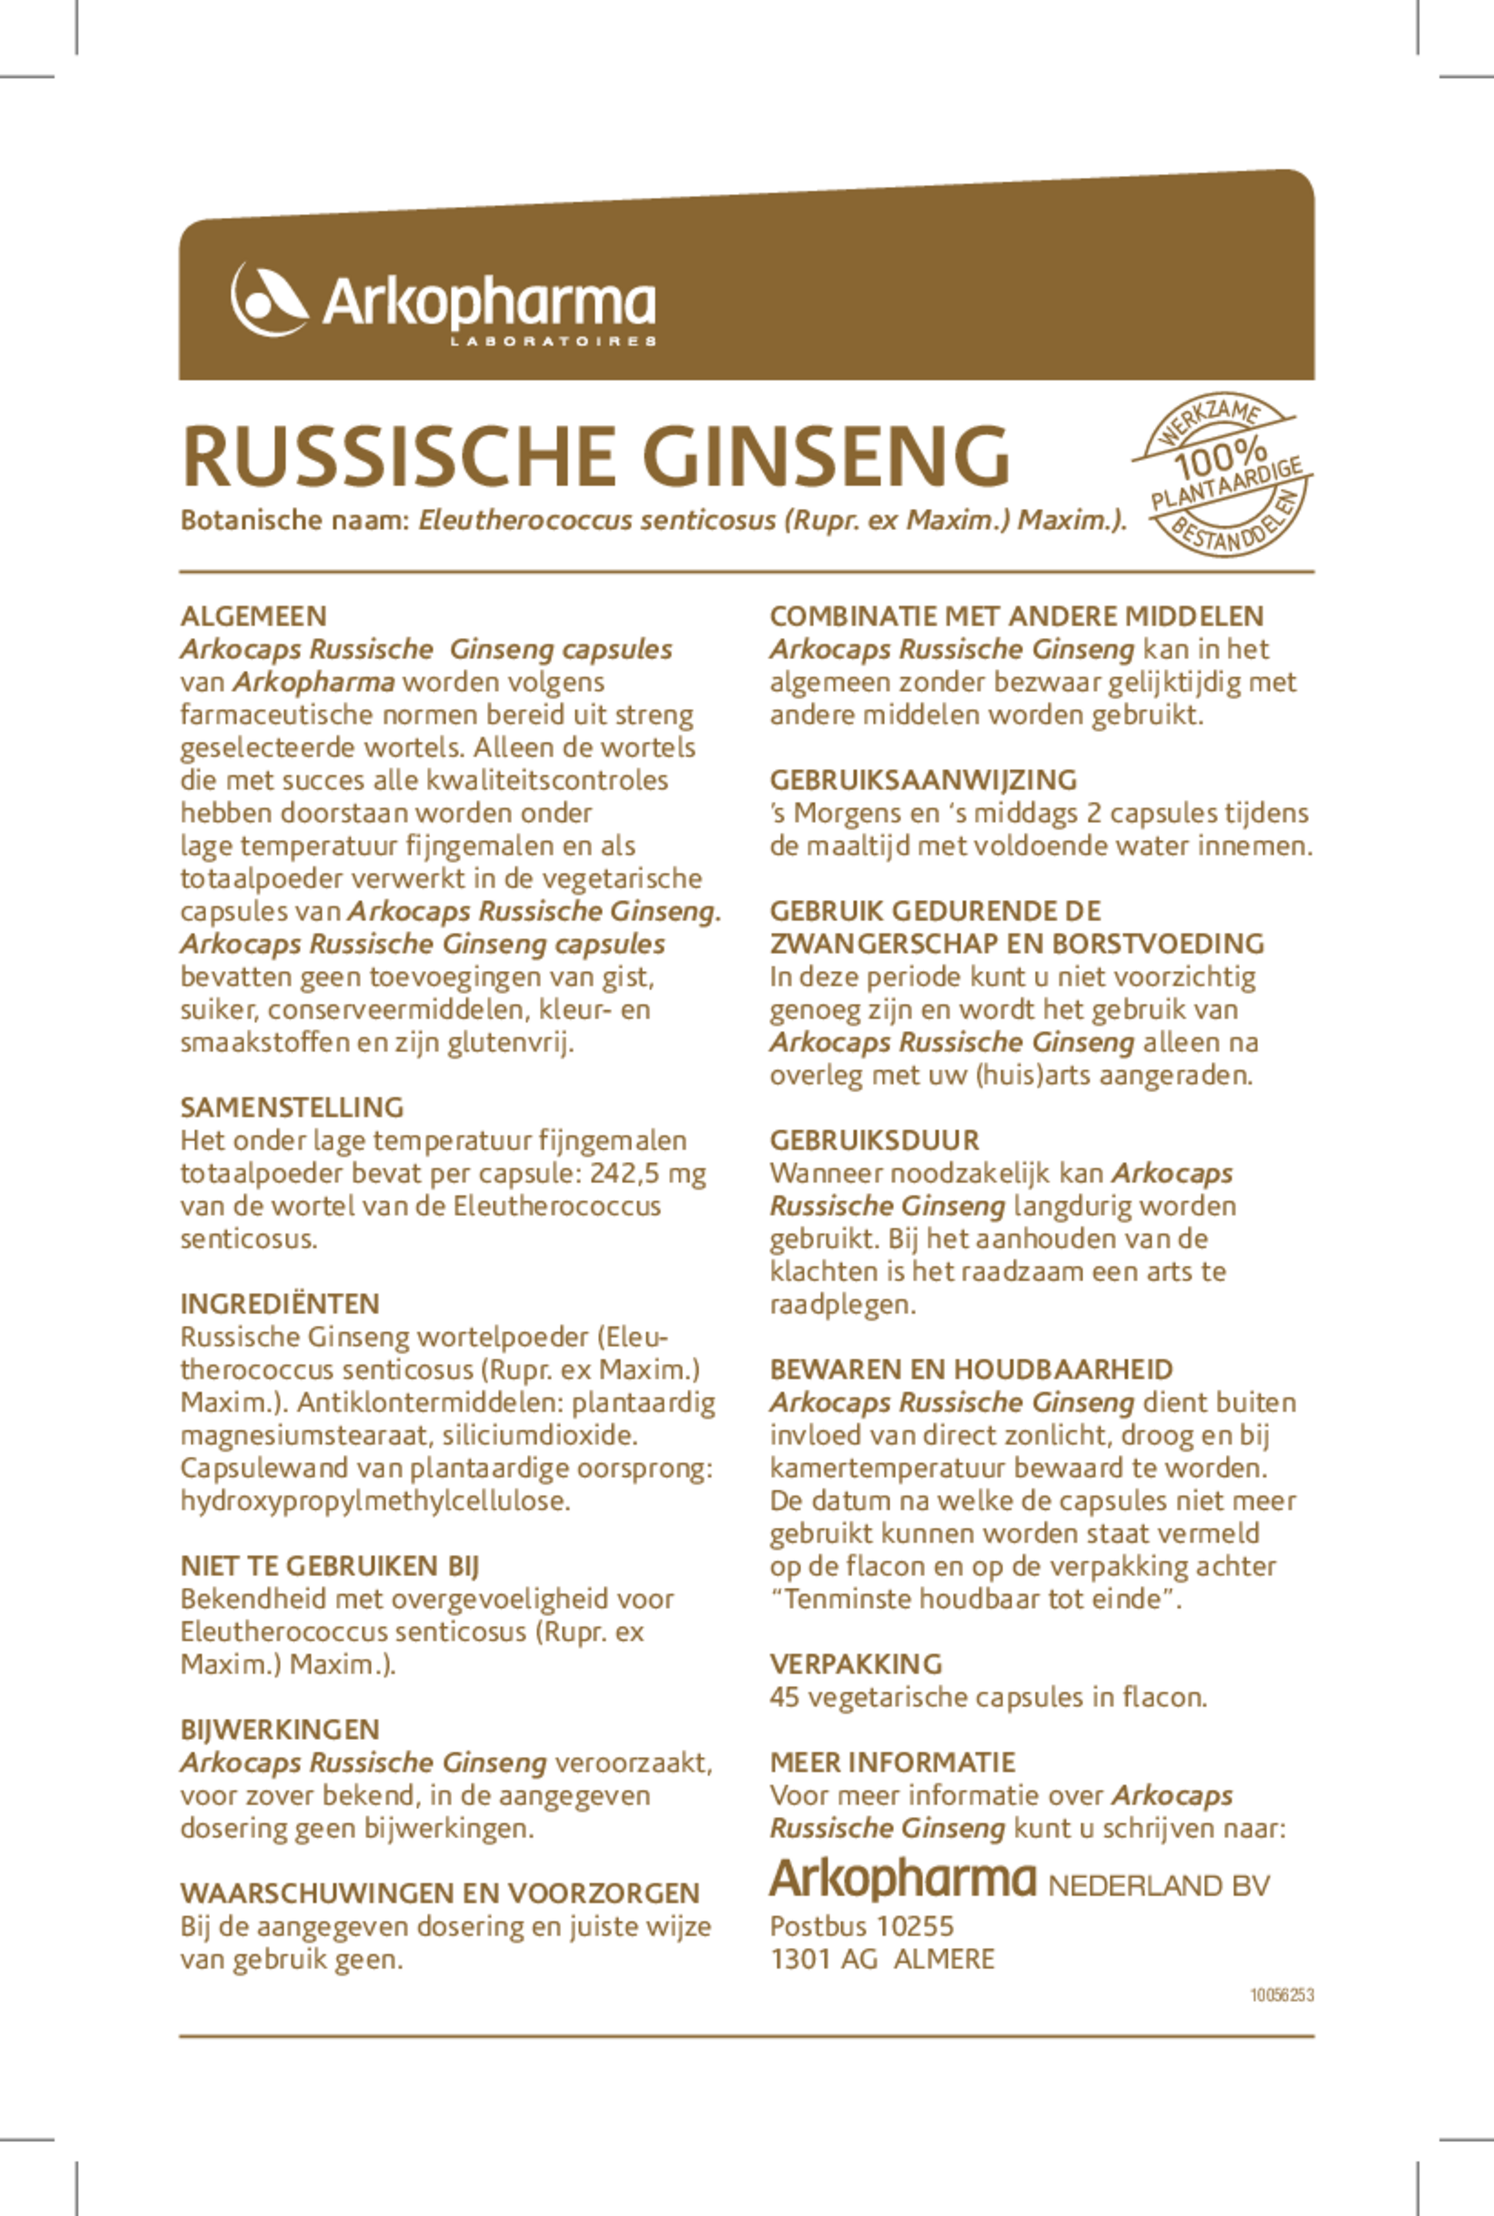 Russische Ginseng Capsules afbeelding van document #1, gebruiksaanwijzing